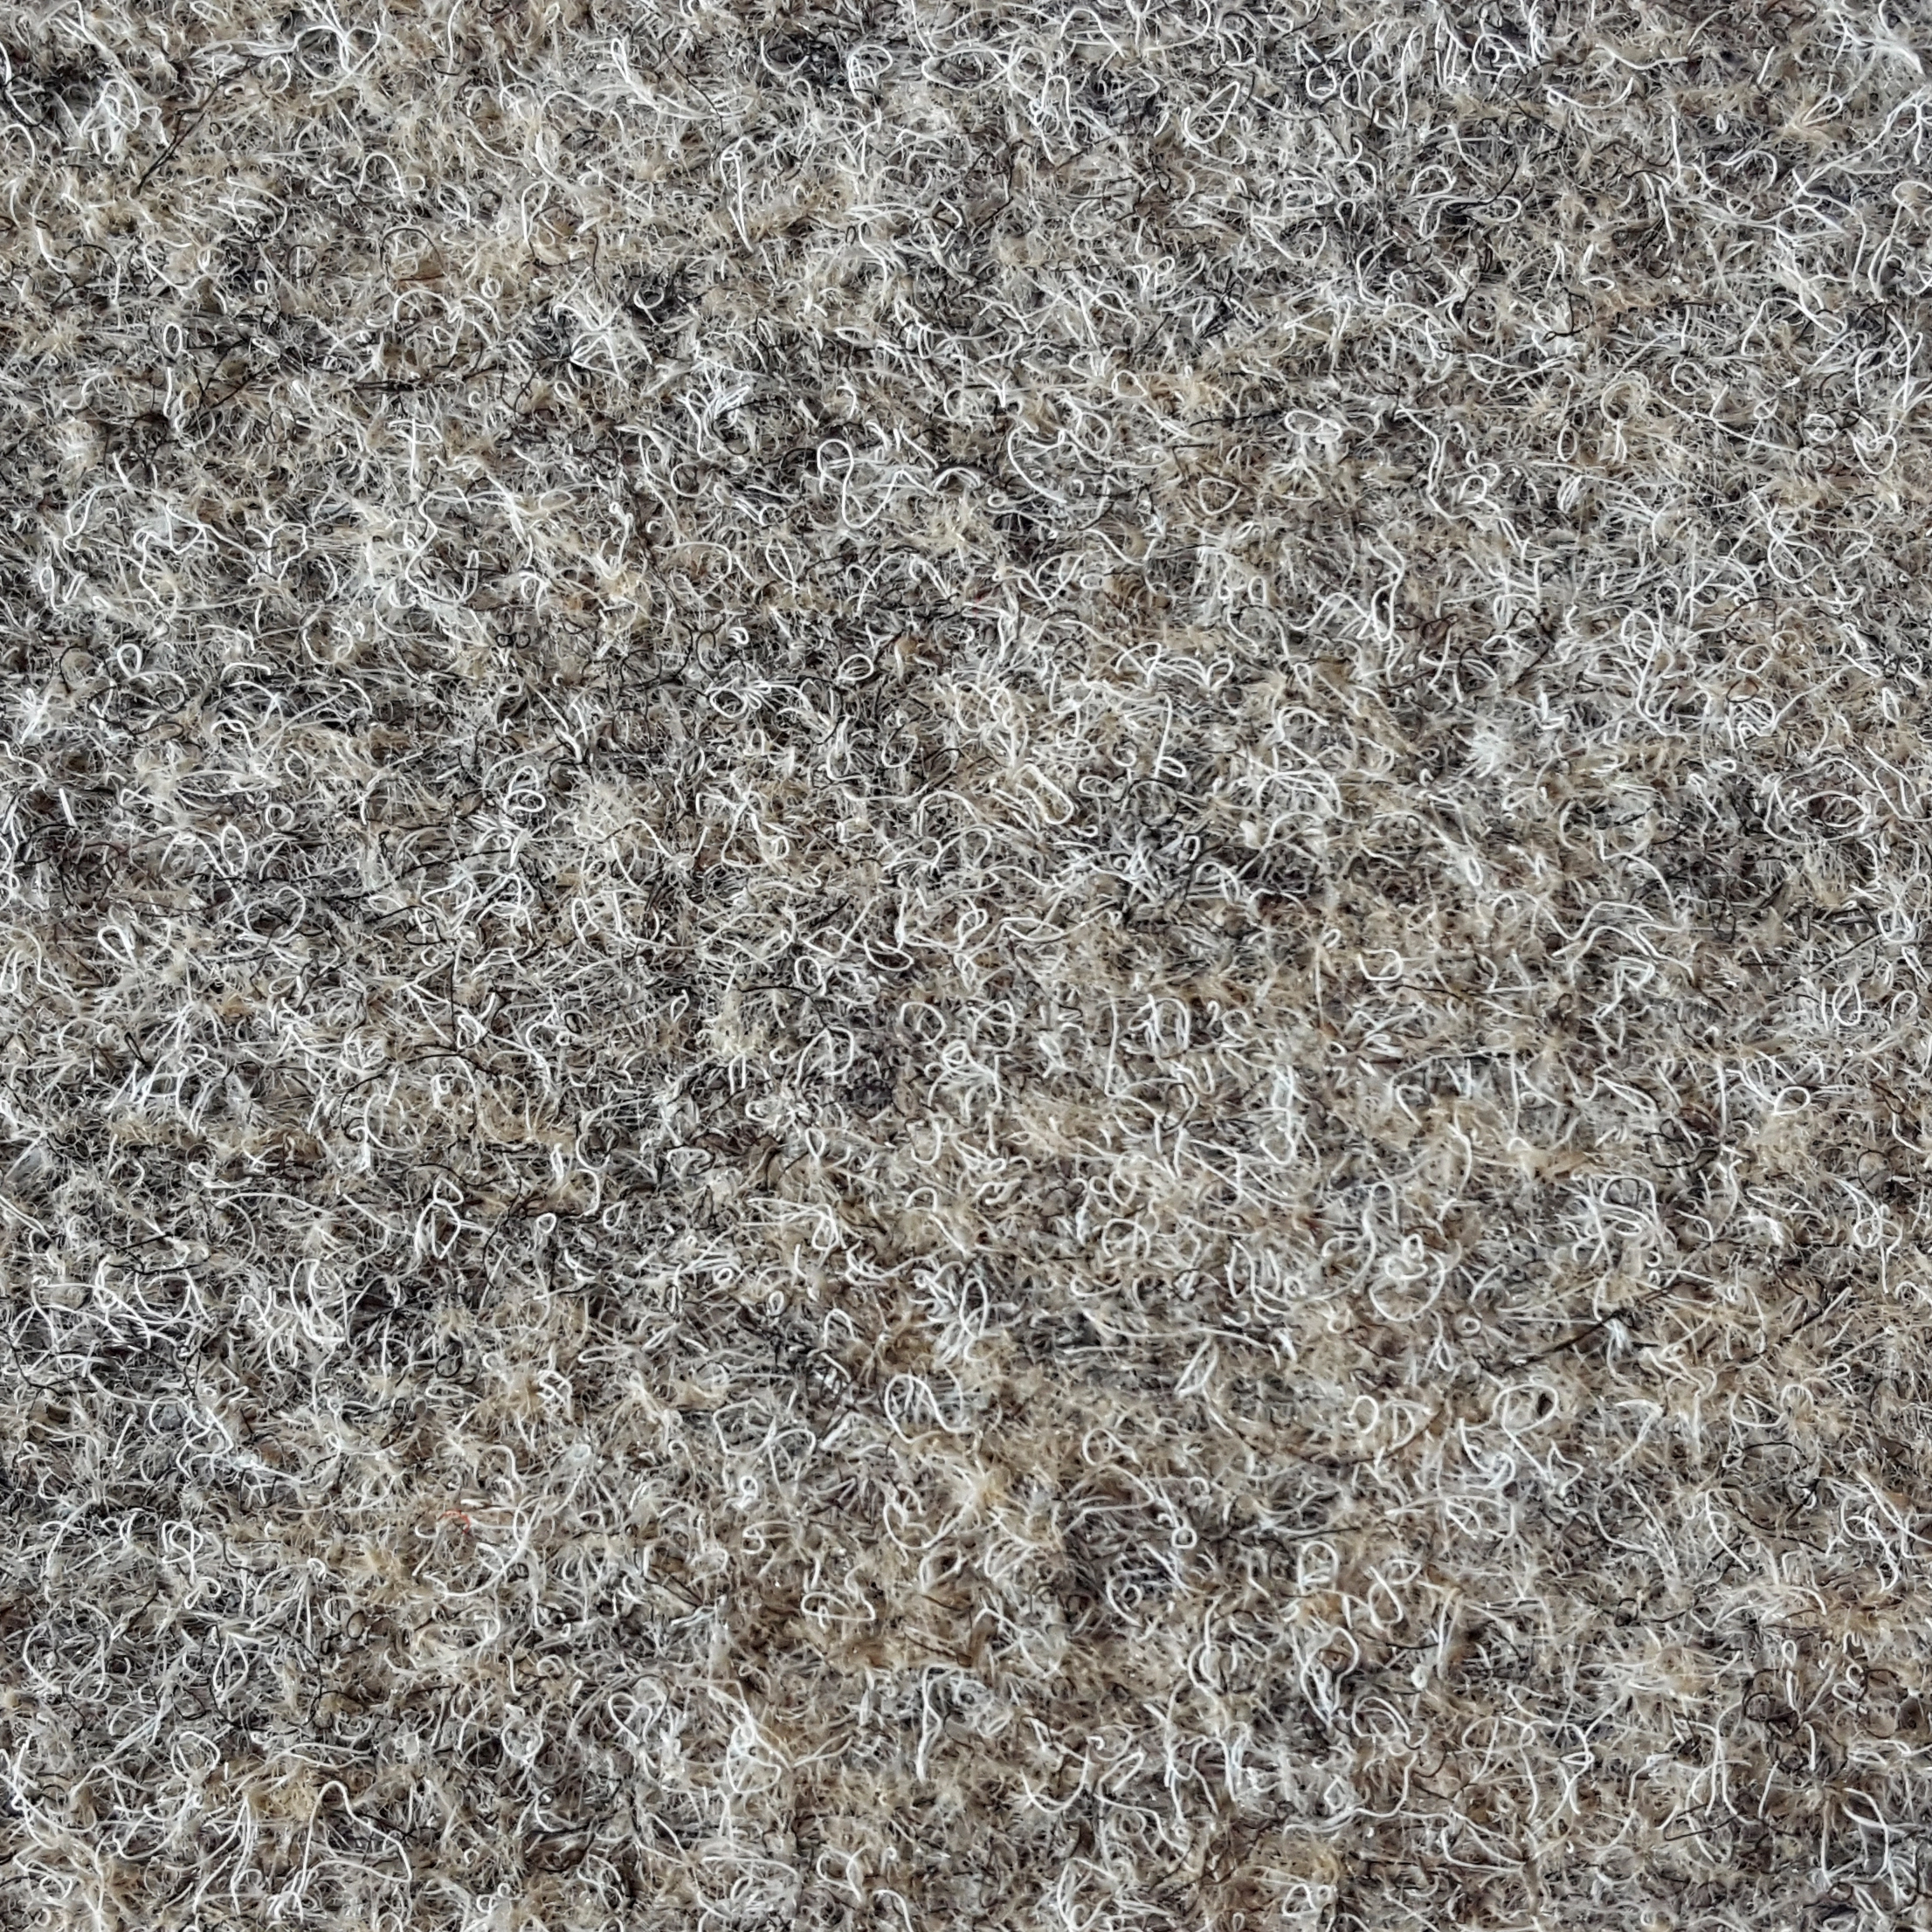 Teppichboden Nadelfilz Invita Sand Meterware Breite: 200 cm kaufen